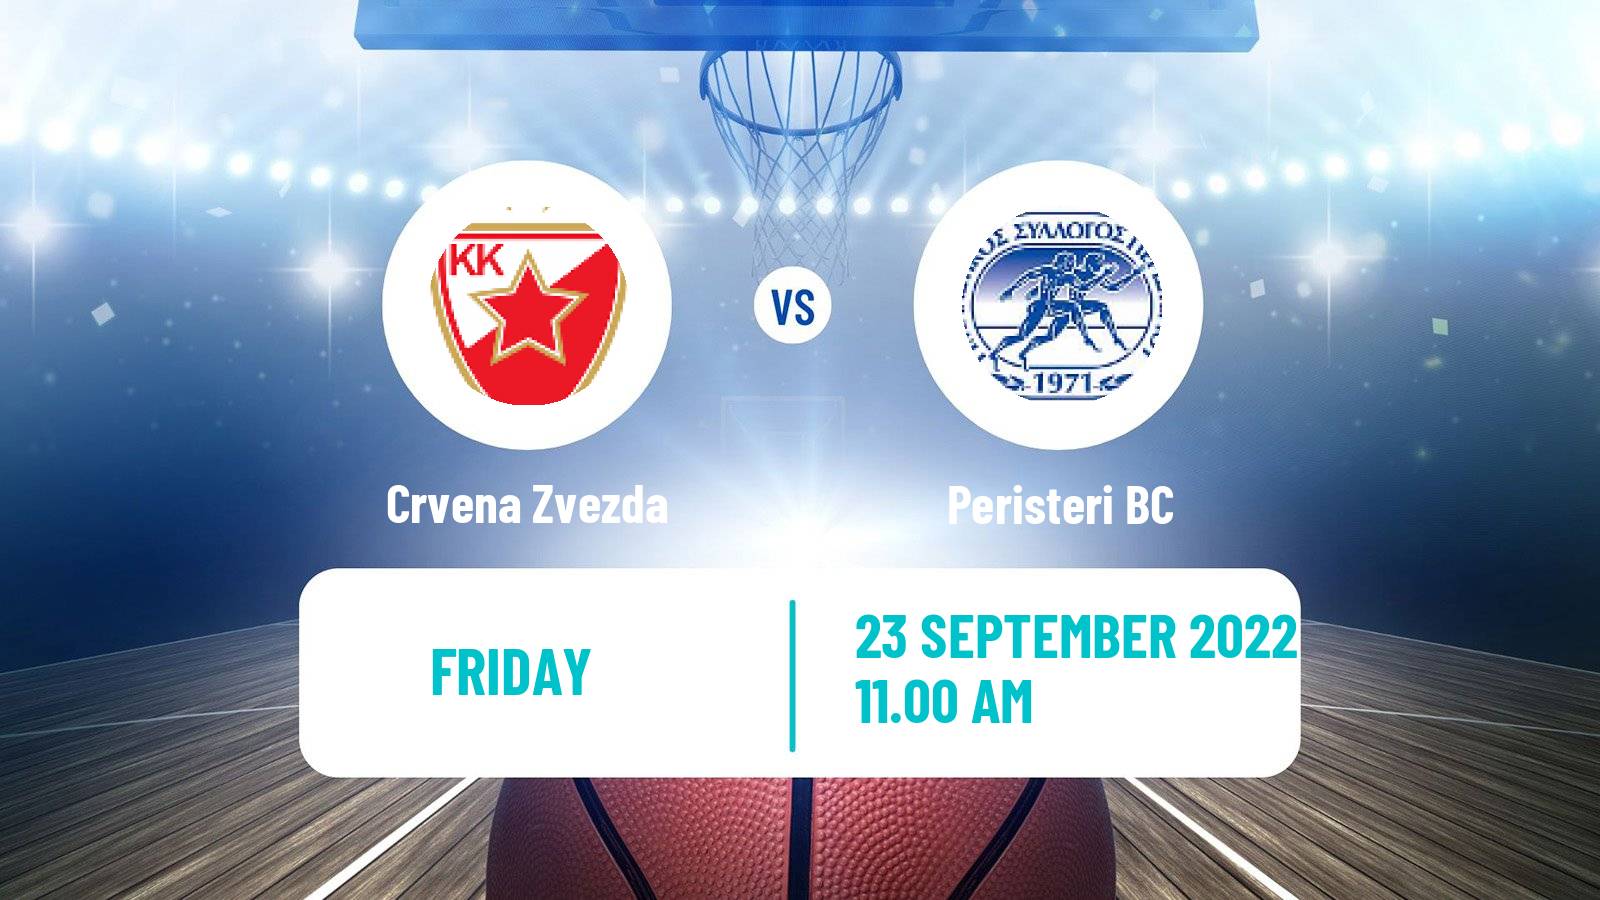 Basketball Club Friendly Basketball Crvena Zvezda - Peristeri BC